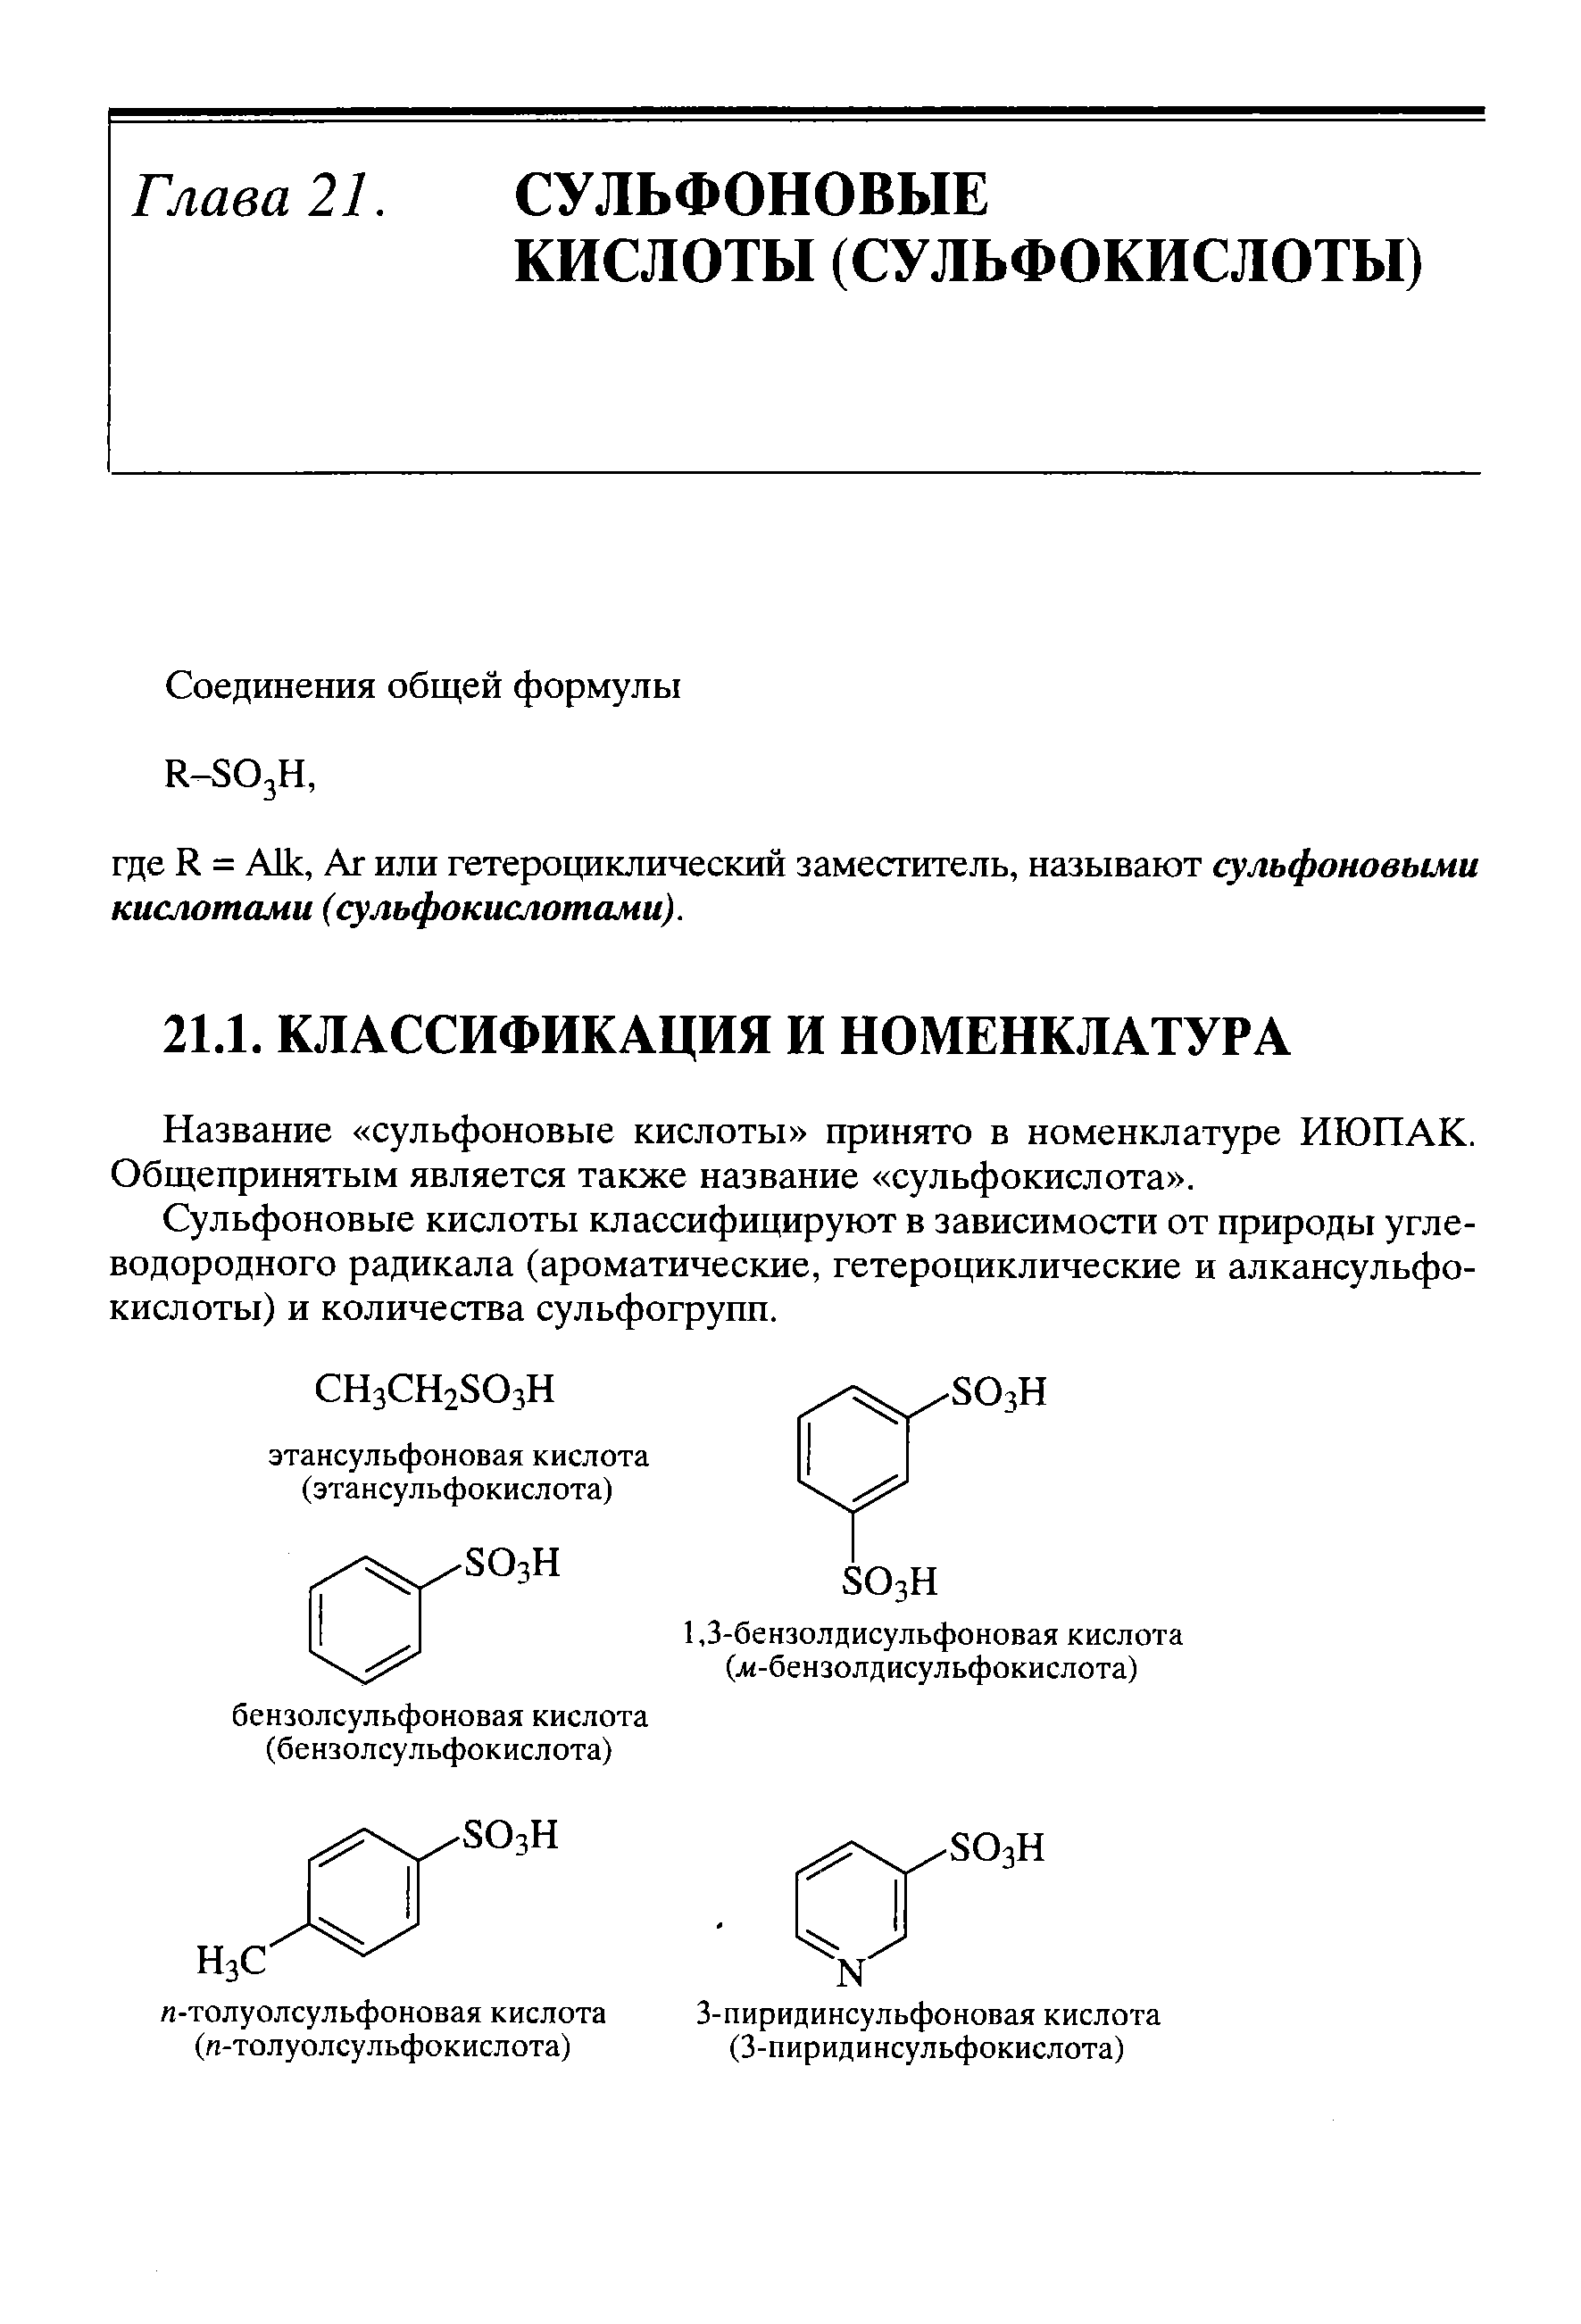 Название сульфоновые кислоты принято в номенклатуре ИЮПАК. Общепринятым является также название сульфокислота .